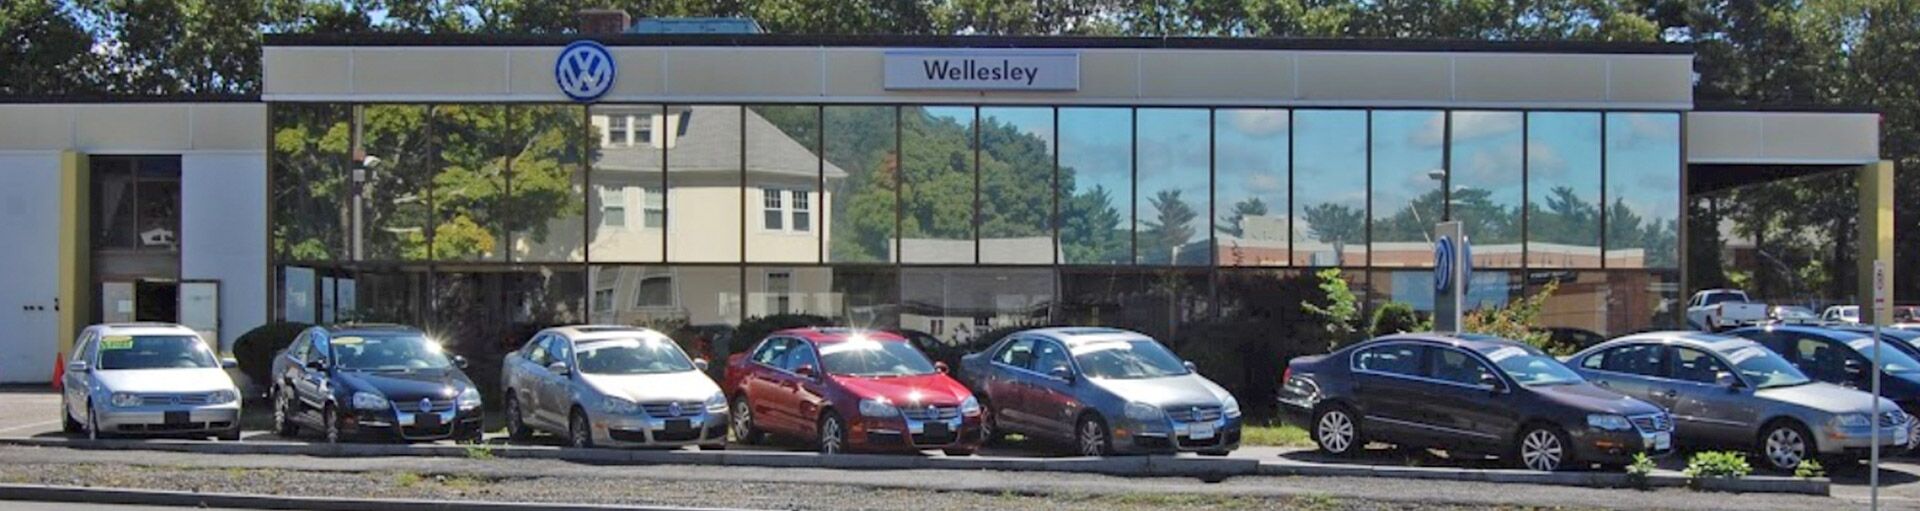 Wellesley Volkswagen Battery Services